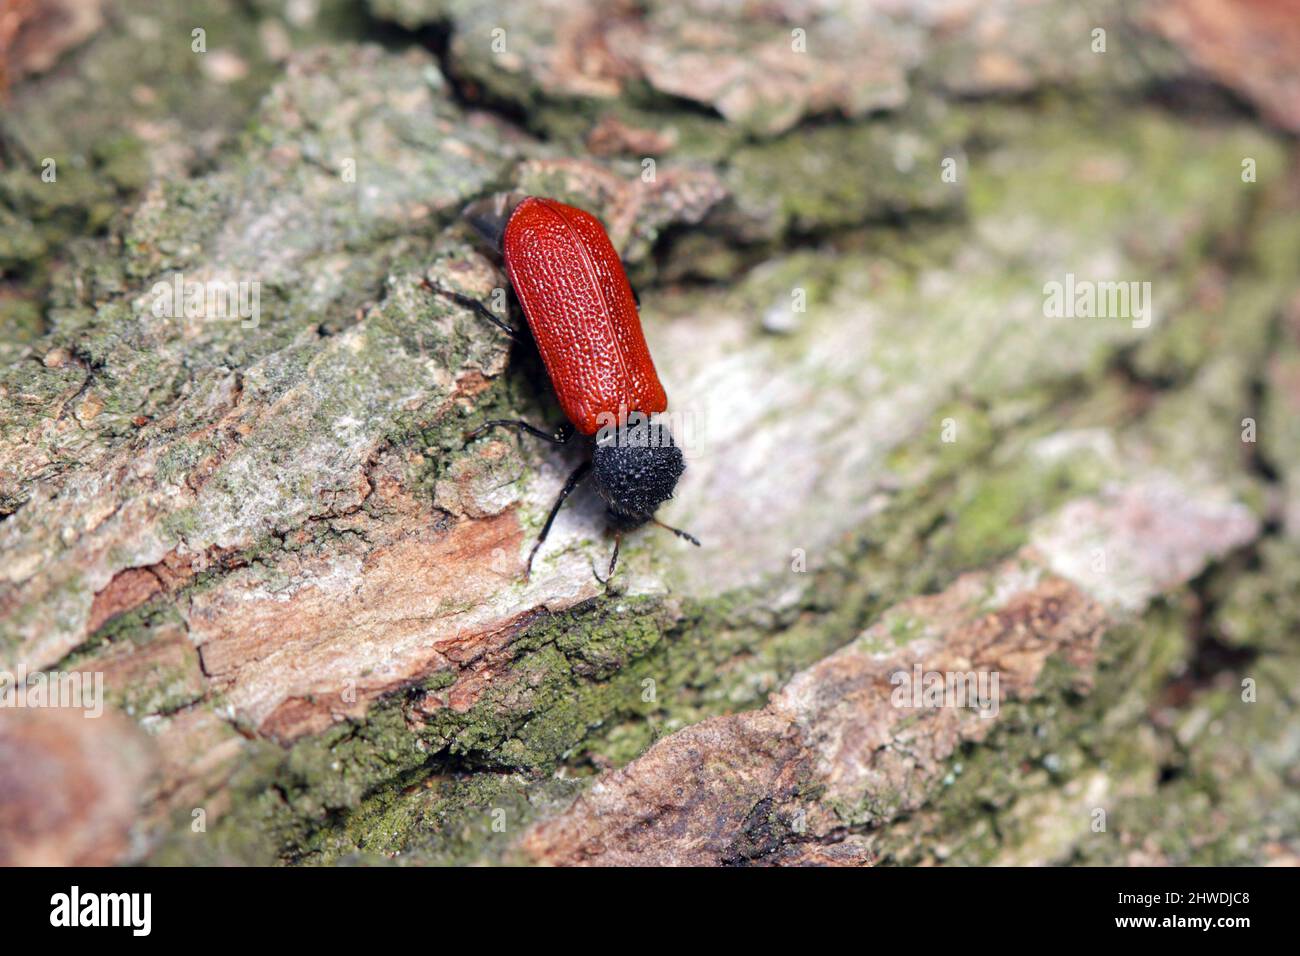 Kapuzinerkäfer (lateinischer Name: Bostricus capucinus - Bostrychidae) - Insekt auf Eichenholz. Es ist ein technischer Schädling des Holzes. Stockfoto